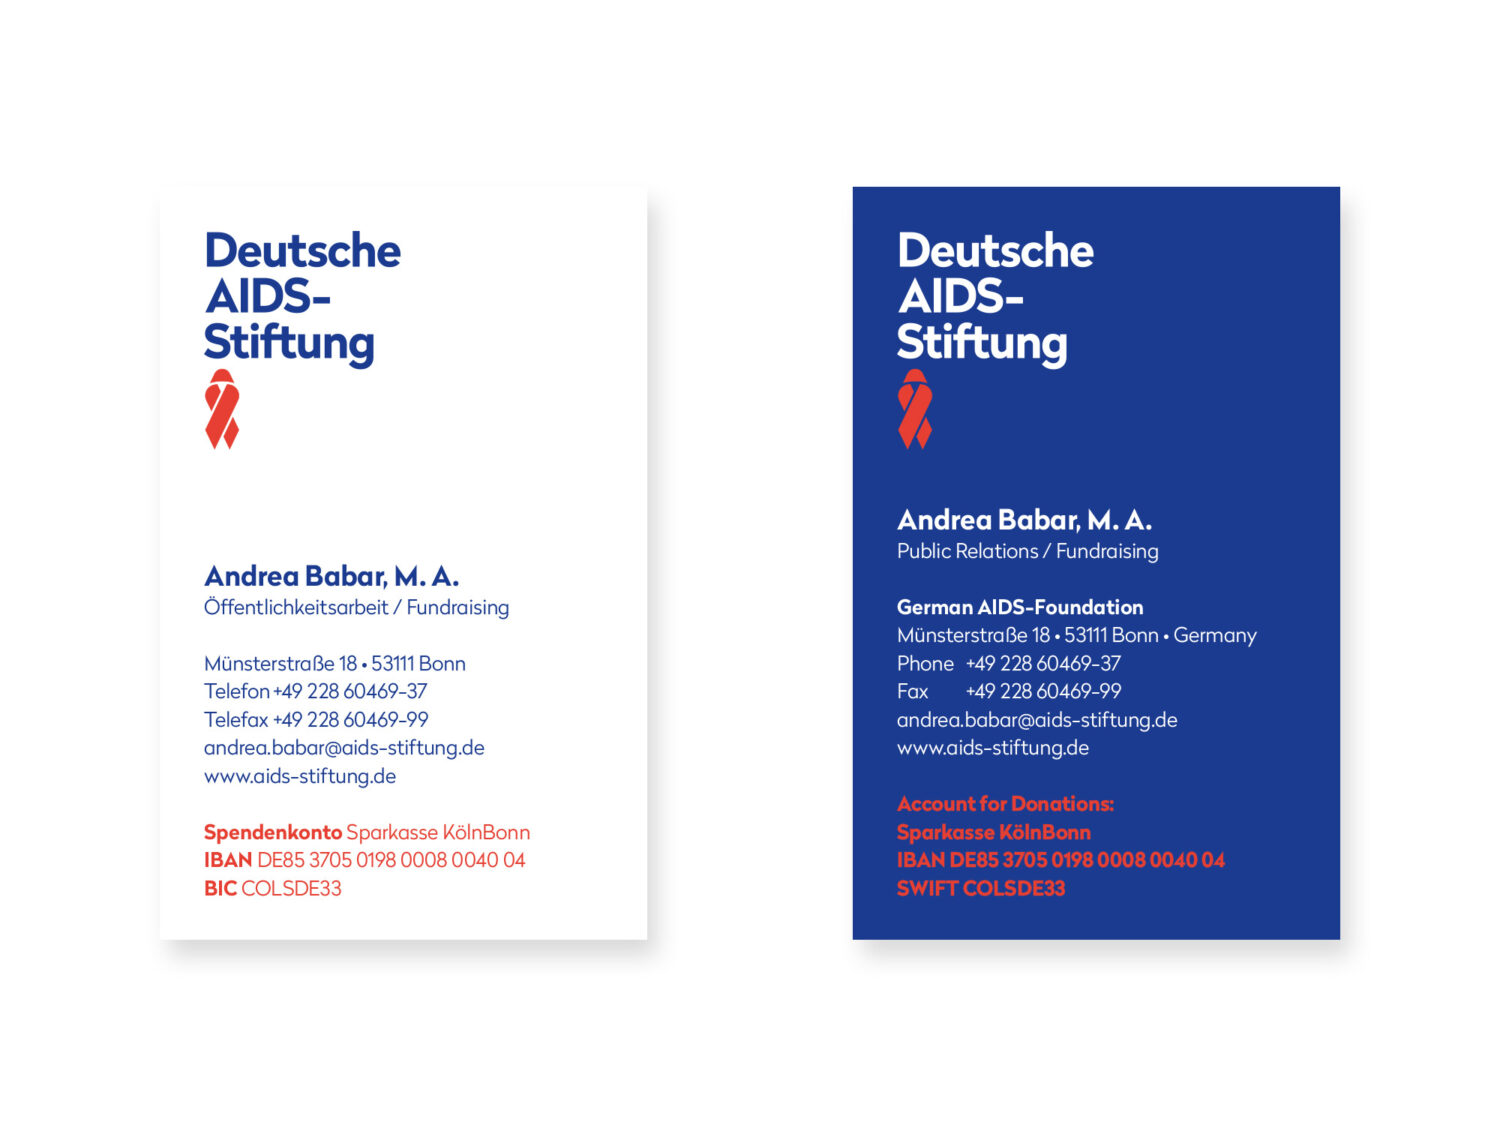 Deutsche AIDS-Stiftung Corporate Design – Anwendungsbeispiel Visitenkarte, Quelle: Deutsche AIDS-Stiftung